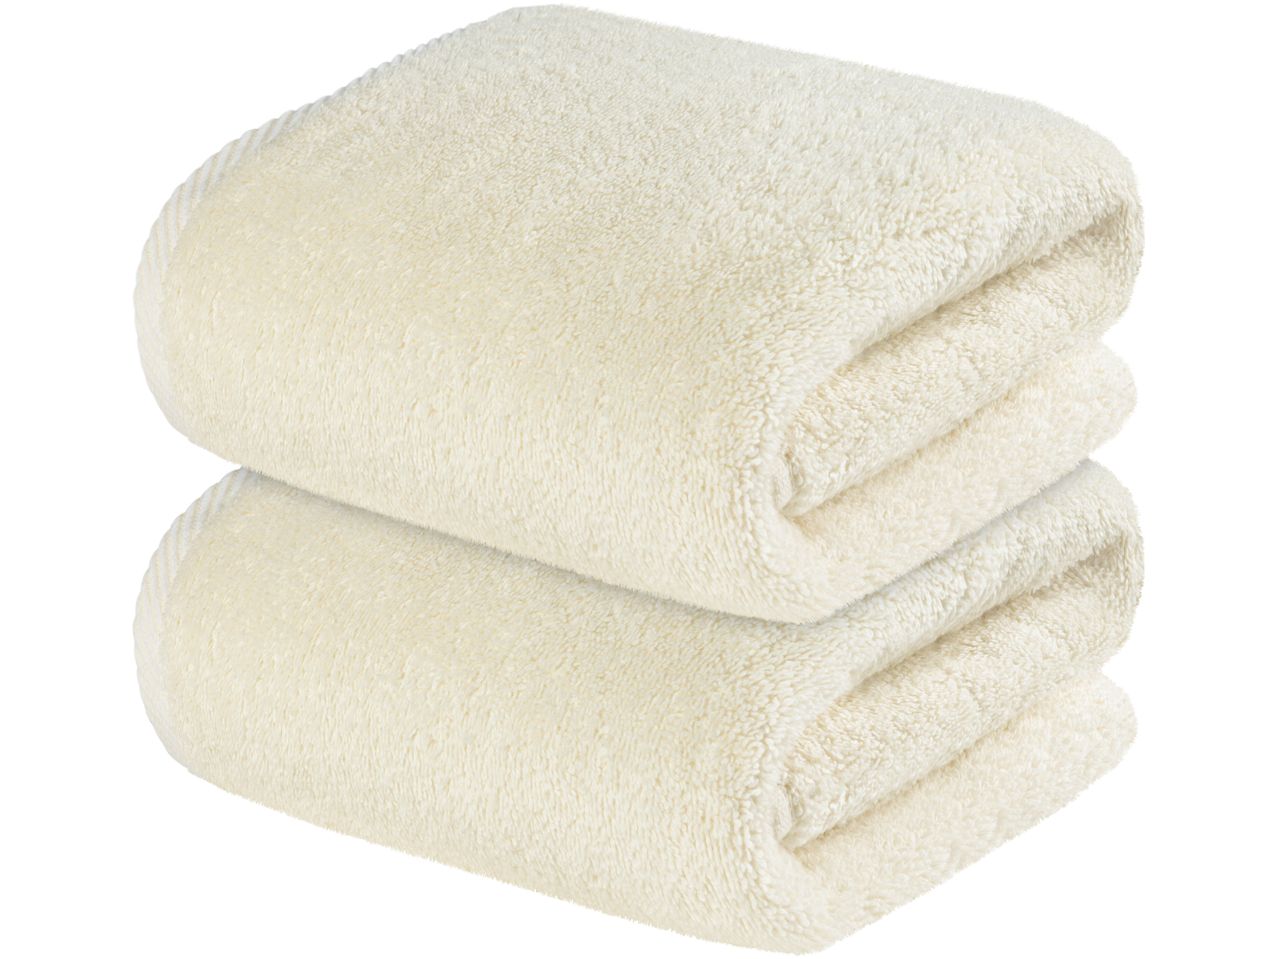 Asciugamano , prezzo 5.99 EUR  
Asciugamano  2 pezzi, 50x100 cm  
-  Puro cotone